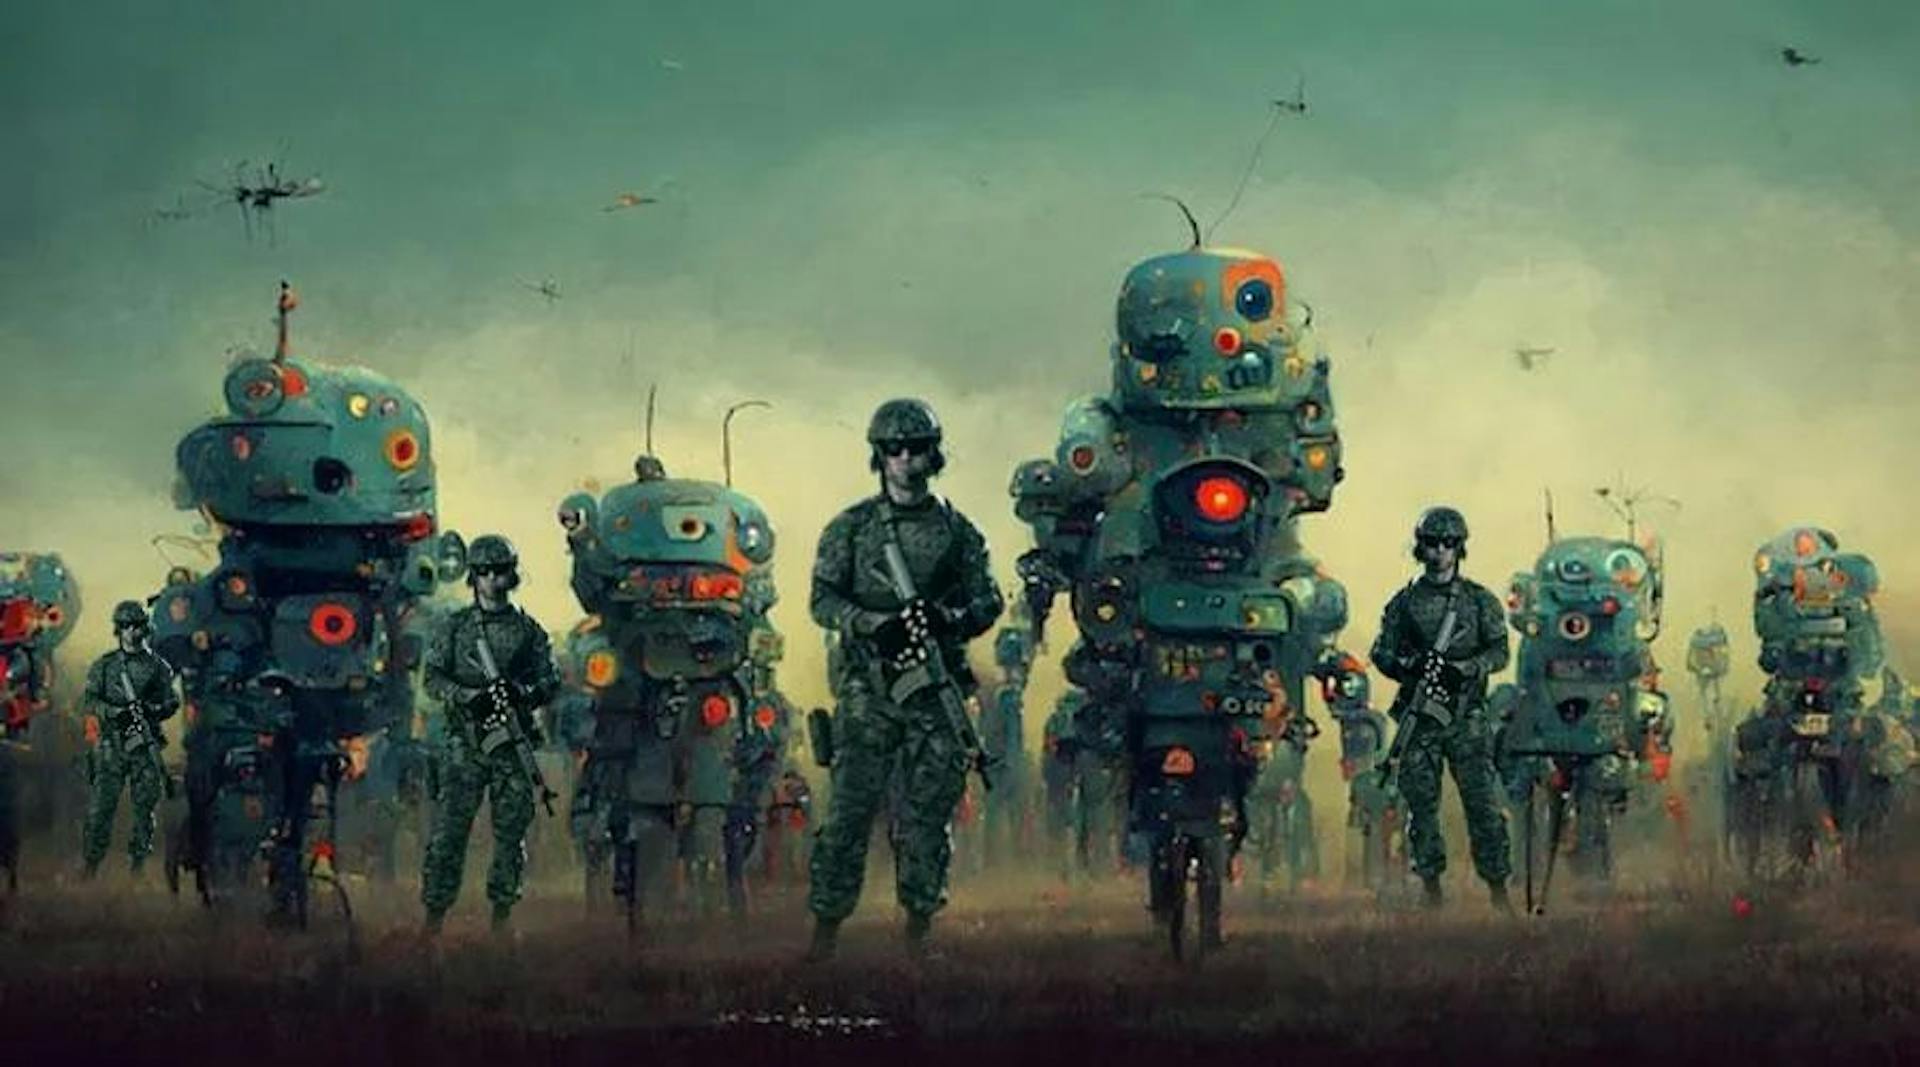 featured image - 未来的战争将使用人工智能武器和自主无人机进行战斗